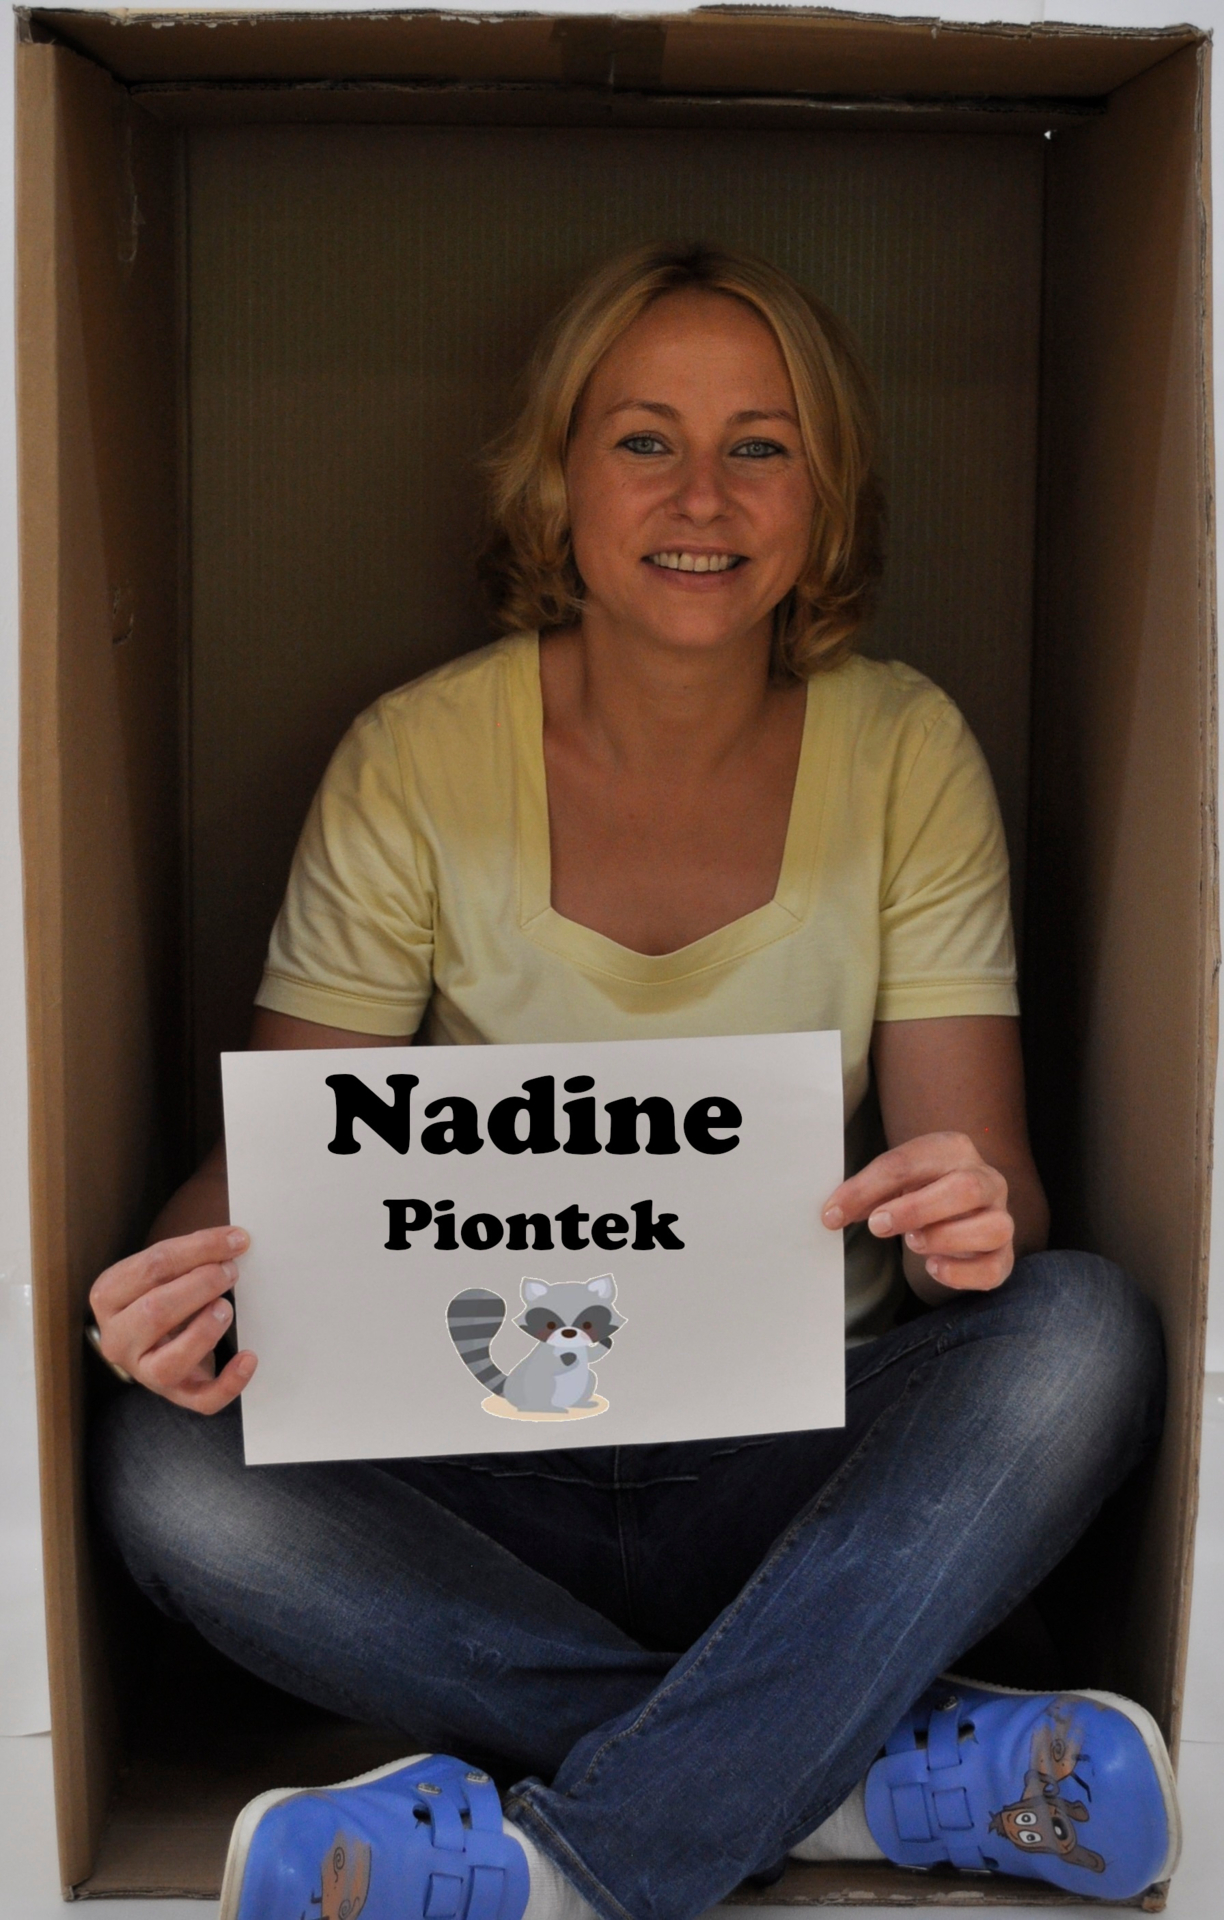 Nadine Piontek